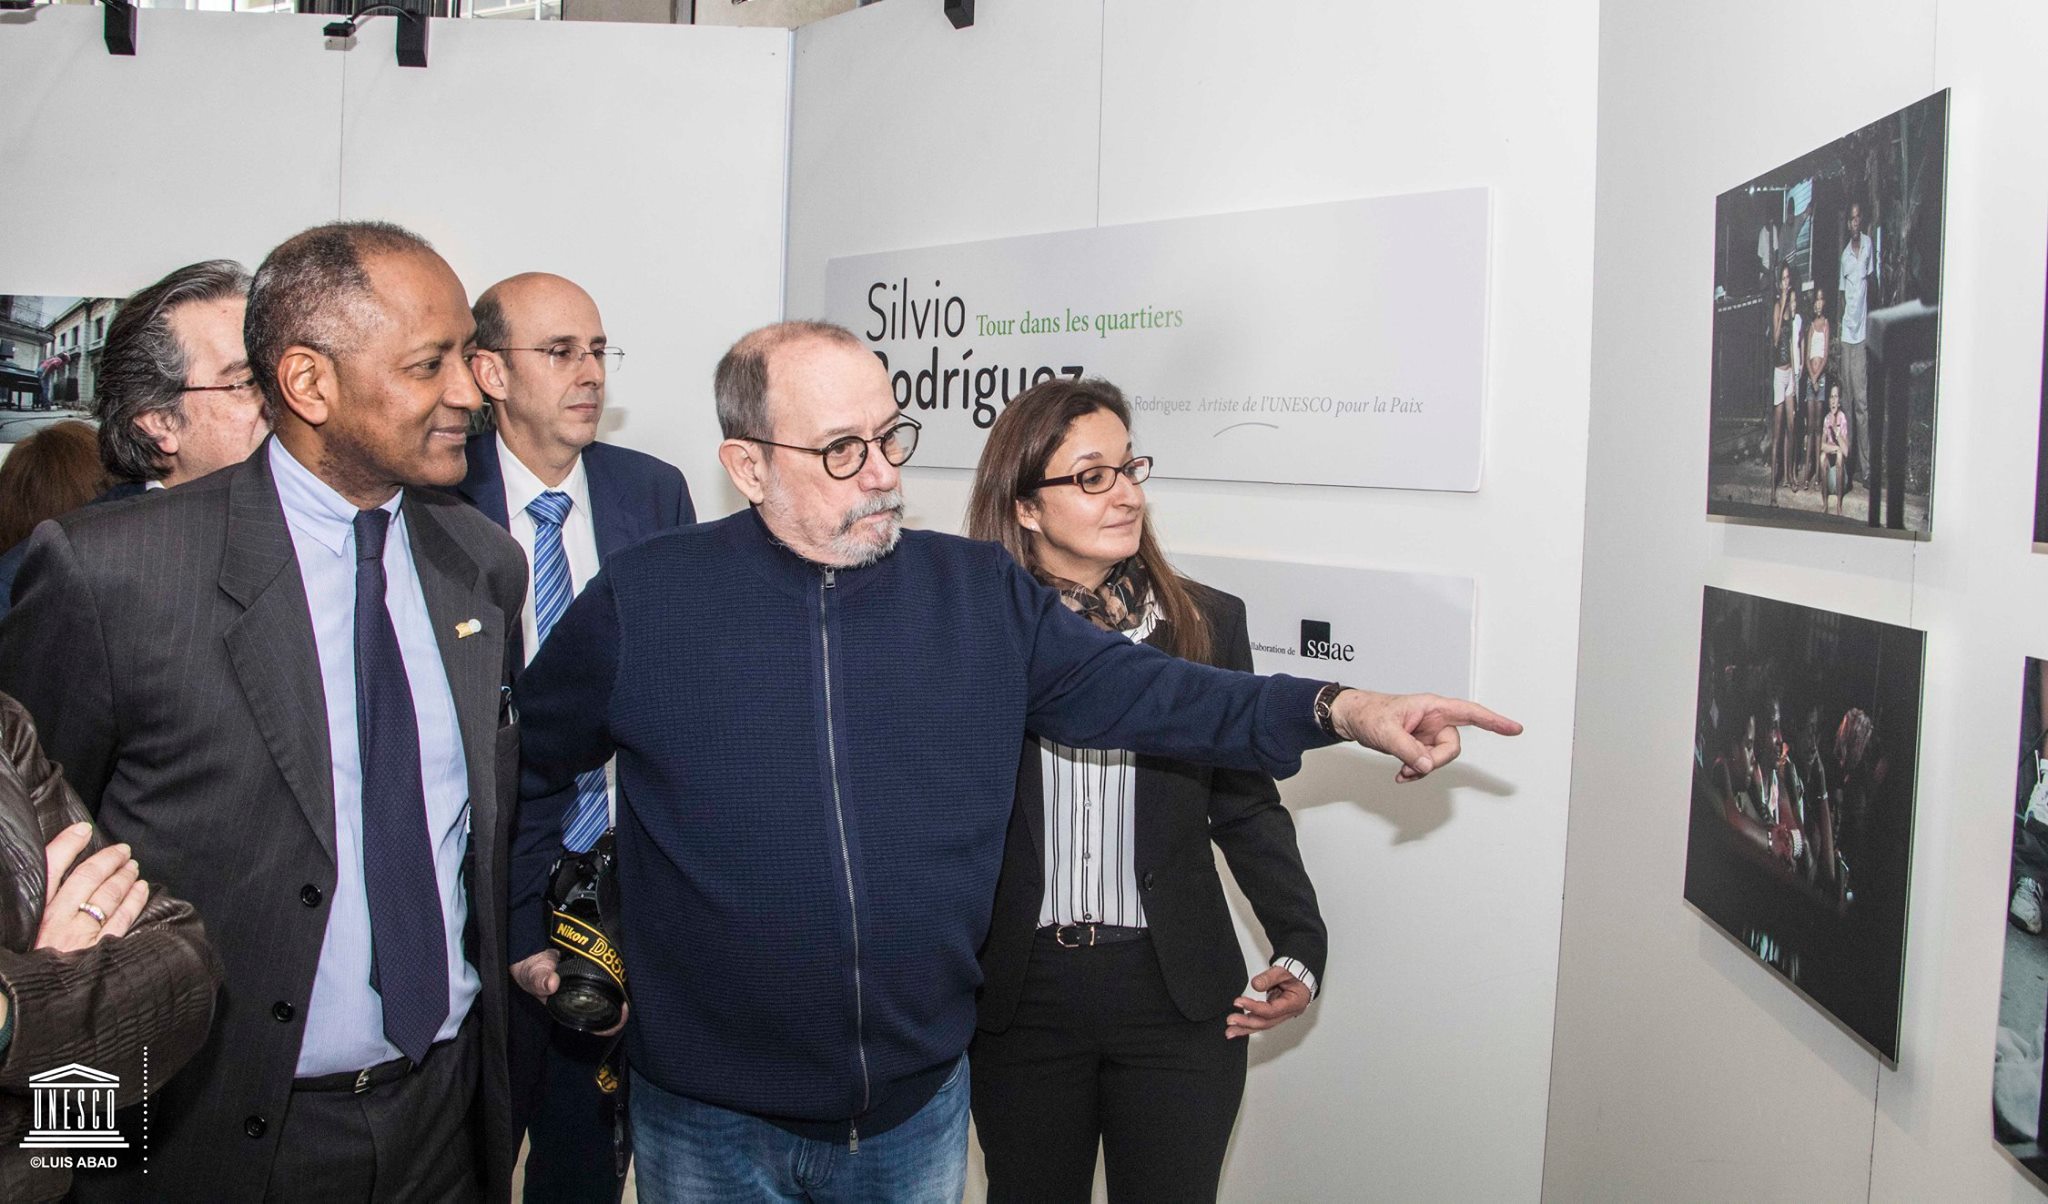 Silvio Rodríguez expone en la UNESCO instantáneas de su Gira por los Barrios